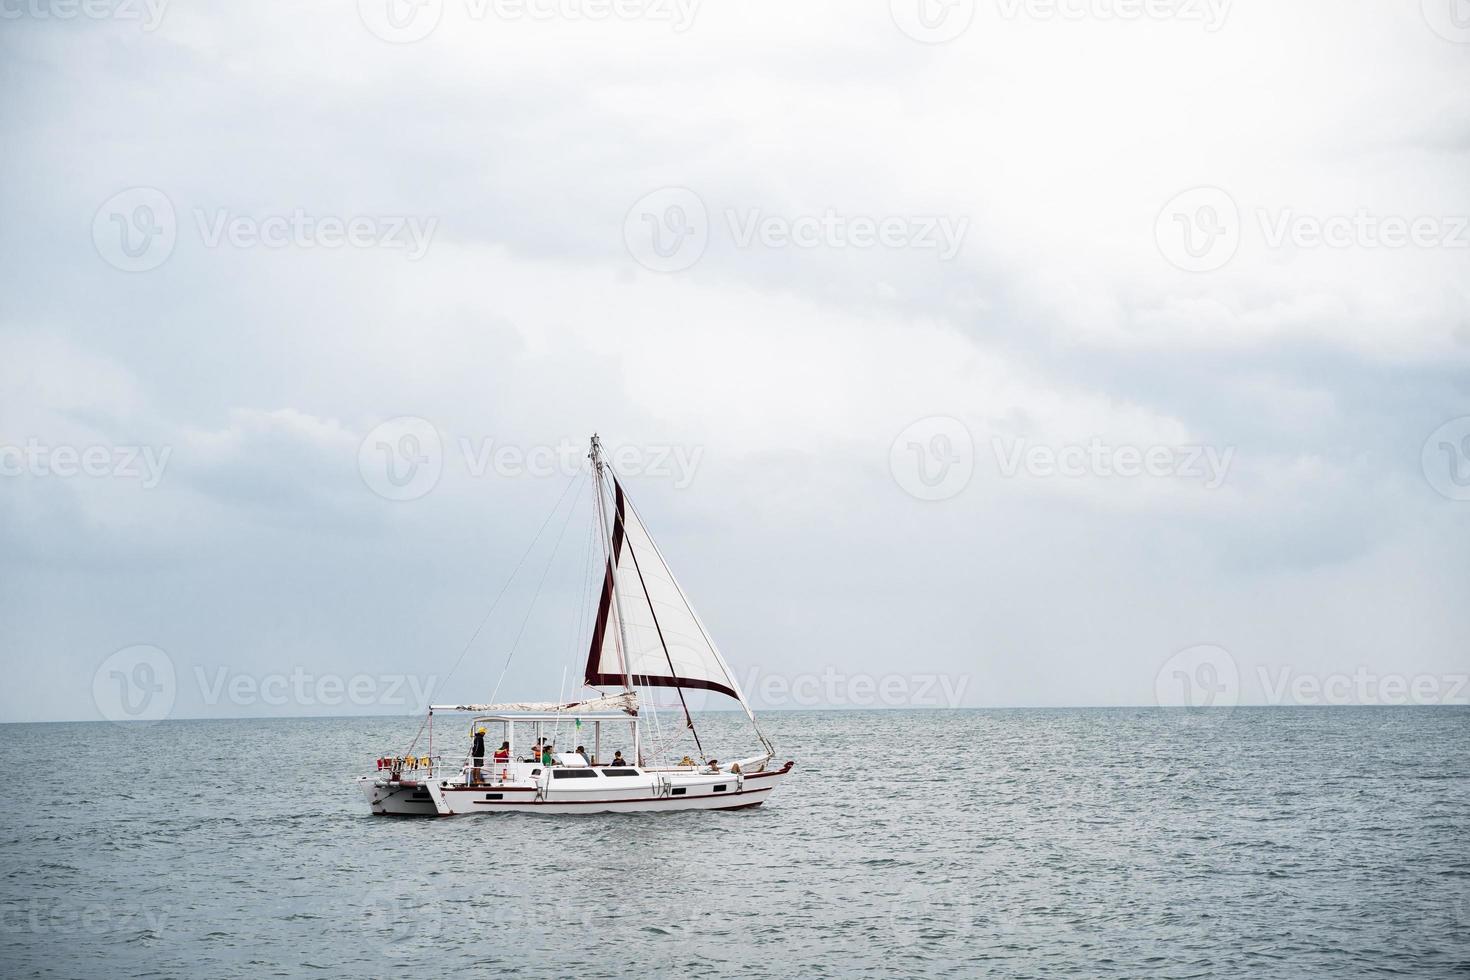 Yachtboot im offenen Meer foto